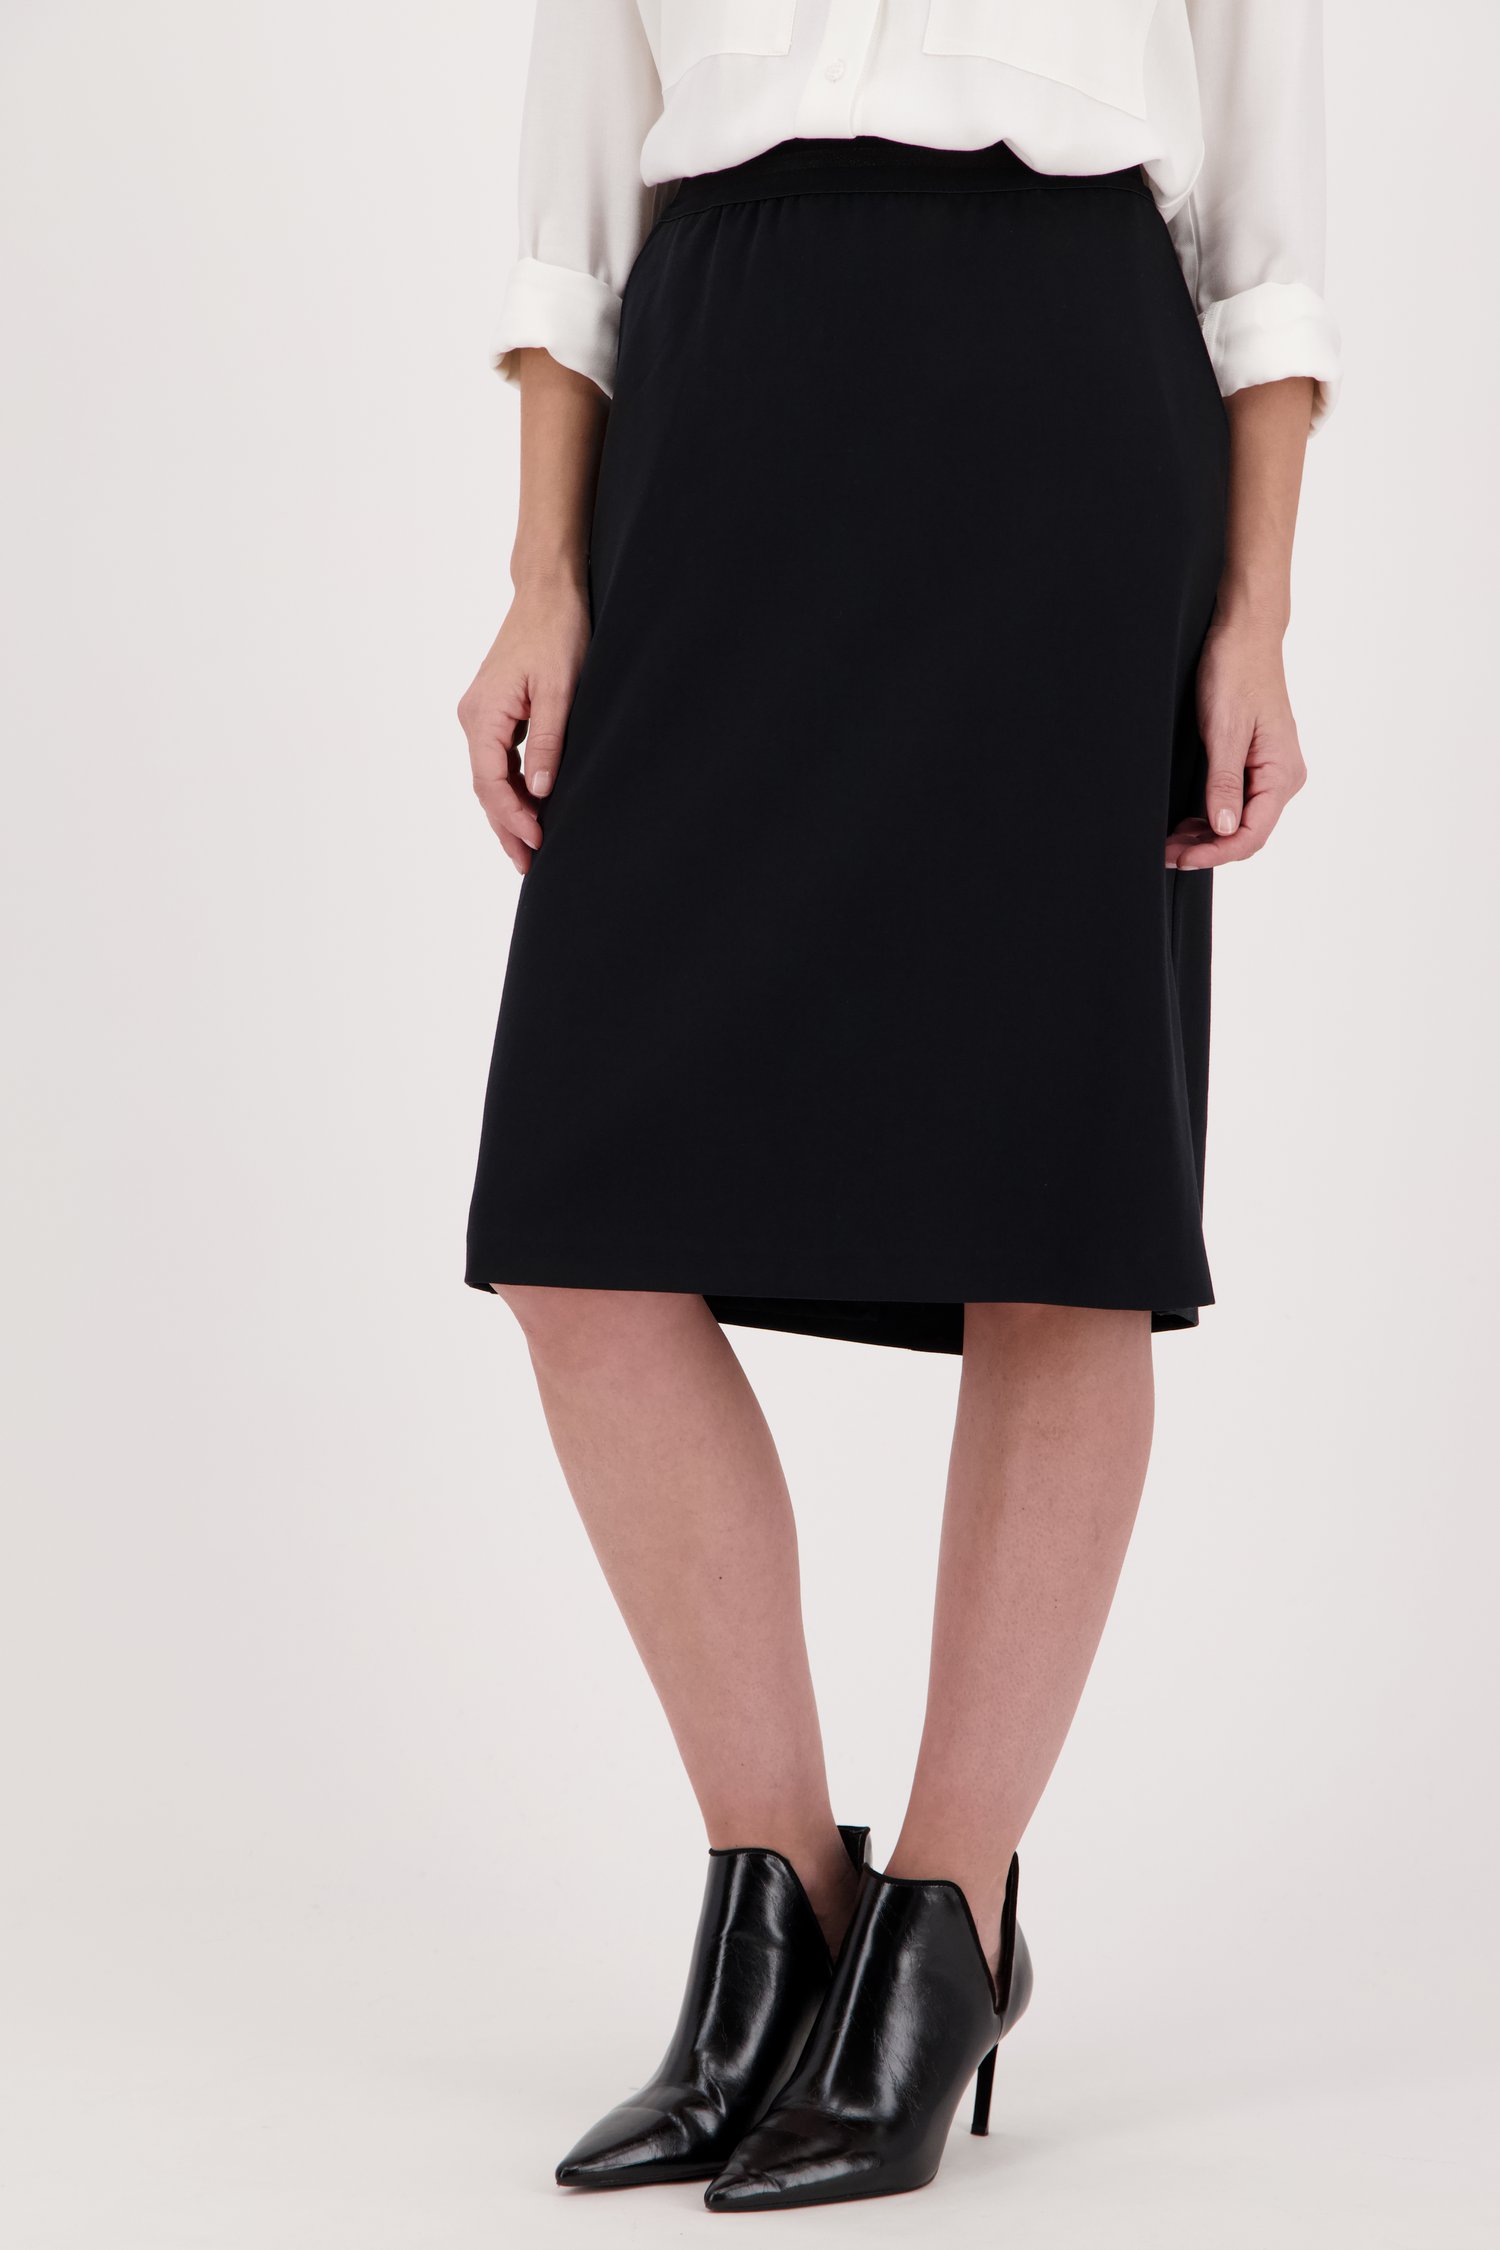 Zwarte rok met elastische tailleband van Claude Arielle voor Dames